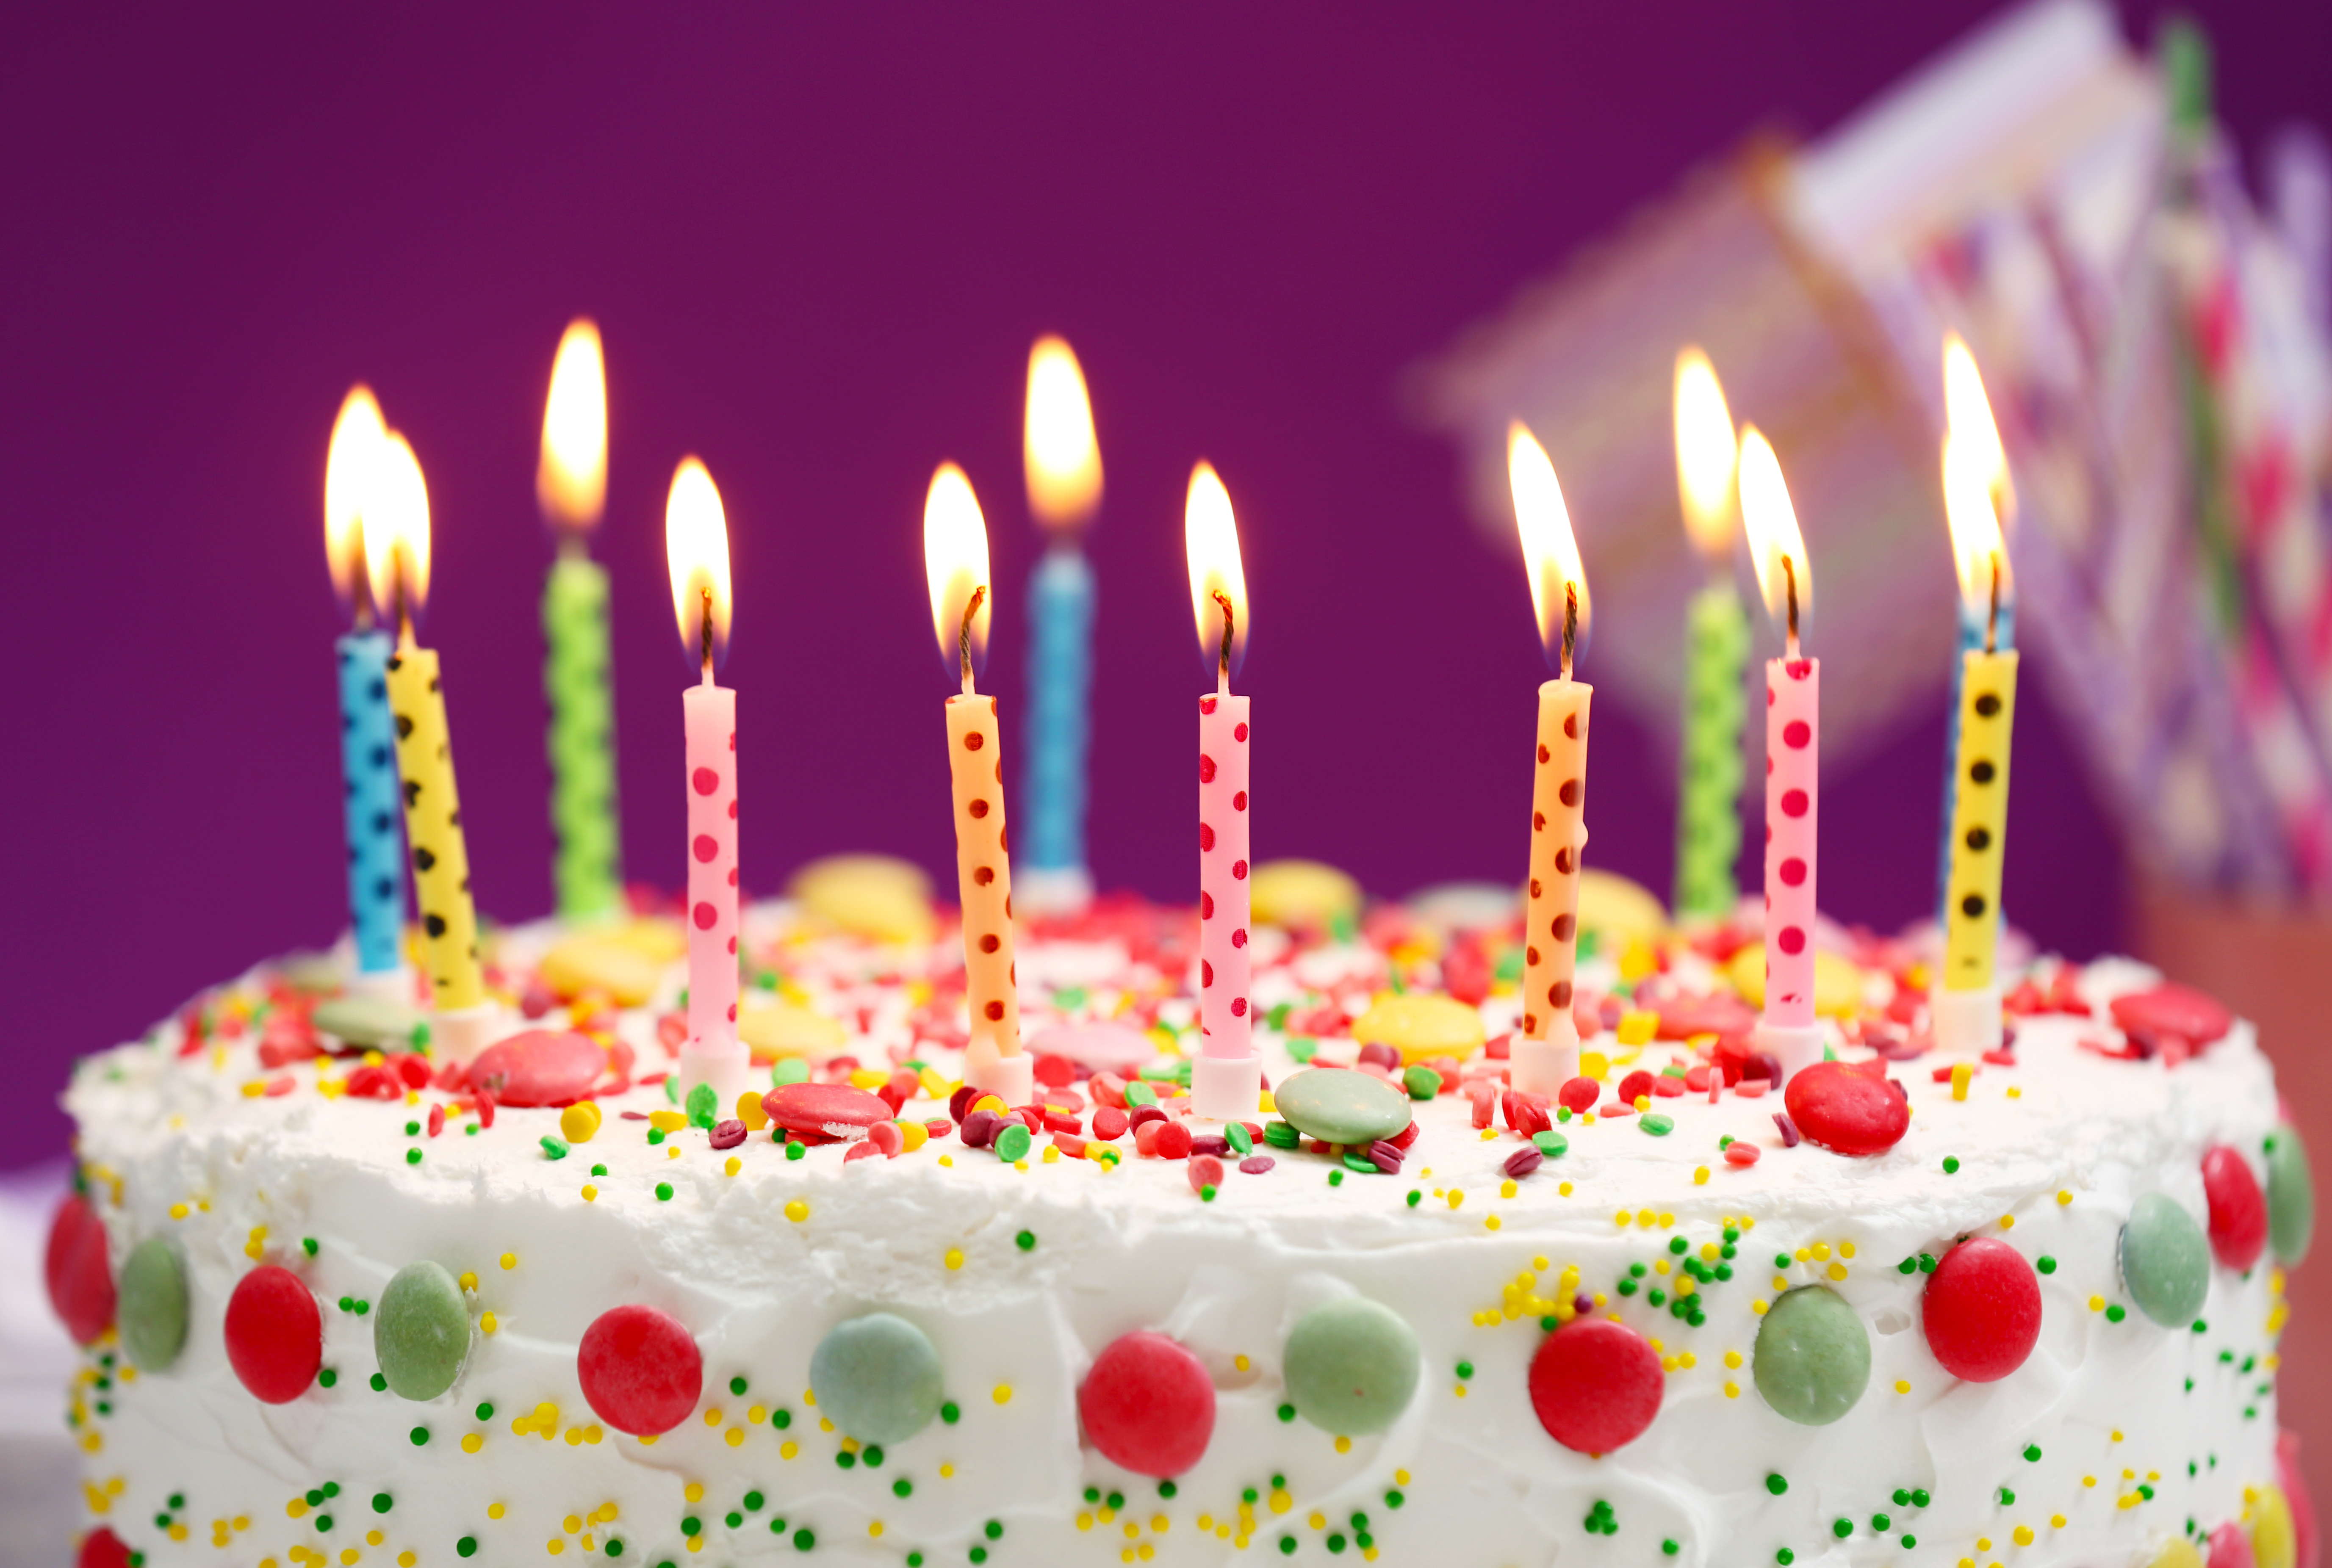 Cake candle. Тортик с днем рождения. Красивые торты на день рождения. Свечи для торта. Открытка с днём рождения торт.